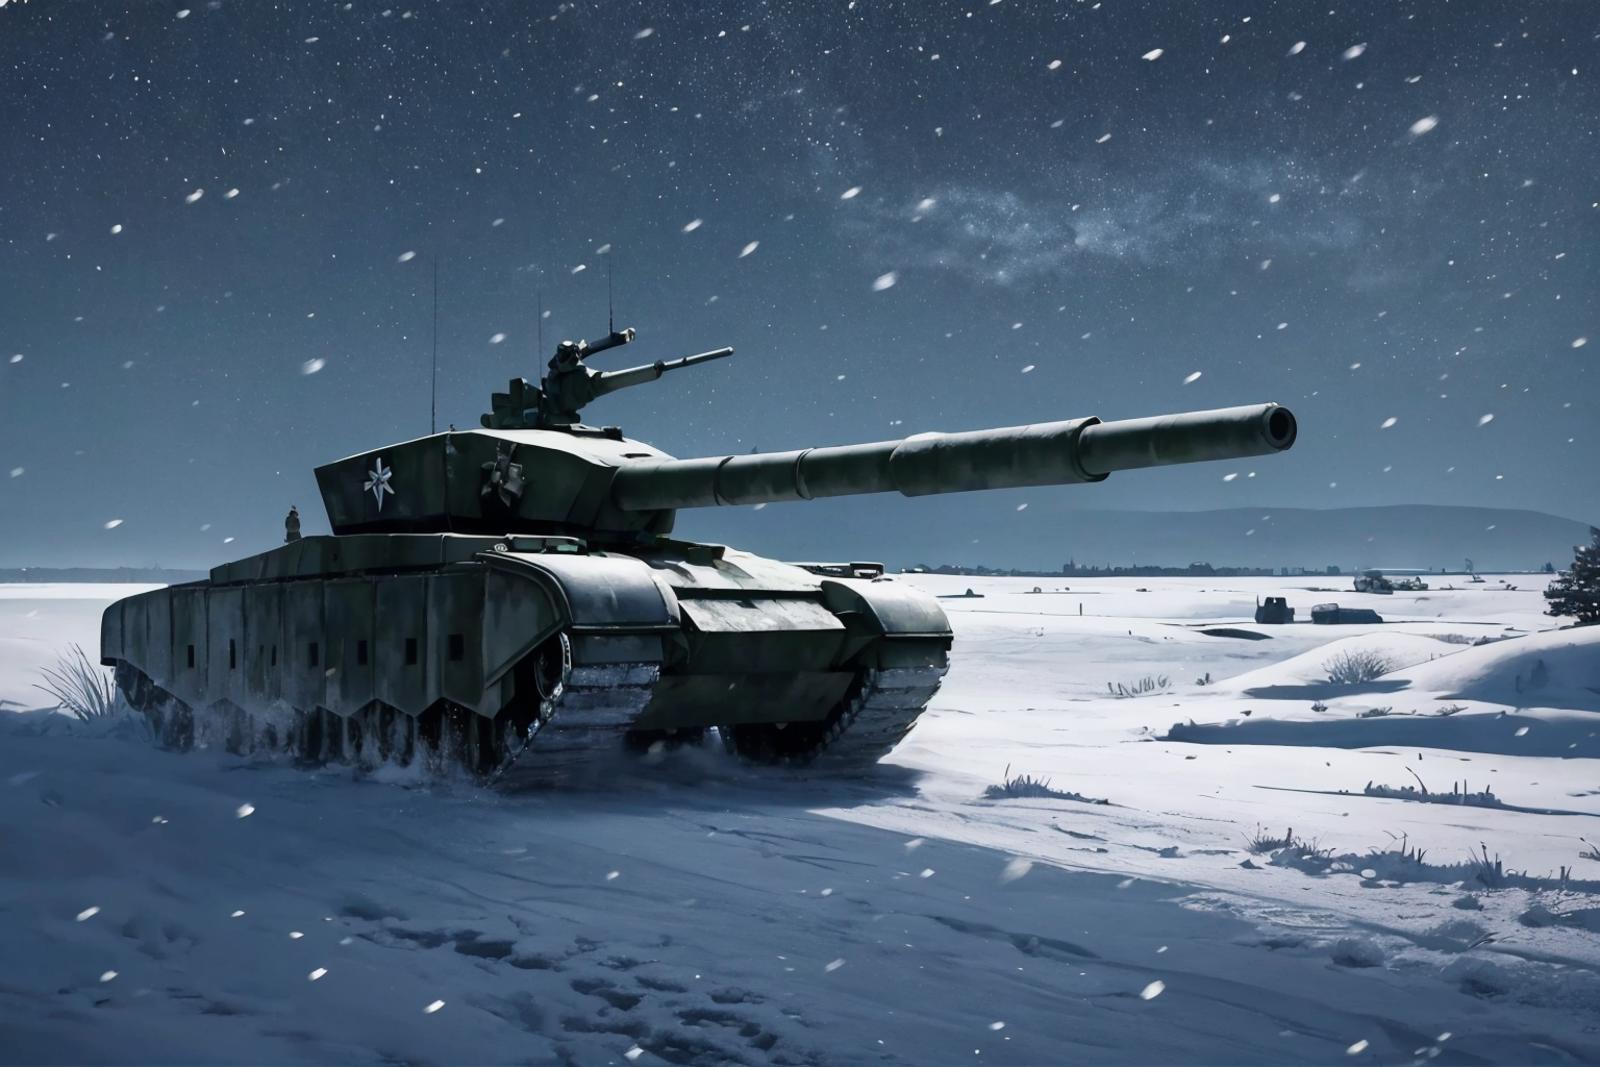 ZTZ-99A tank image by richyrich515